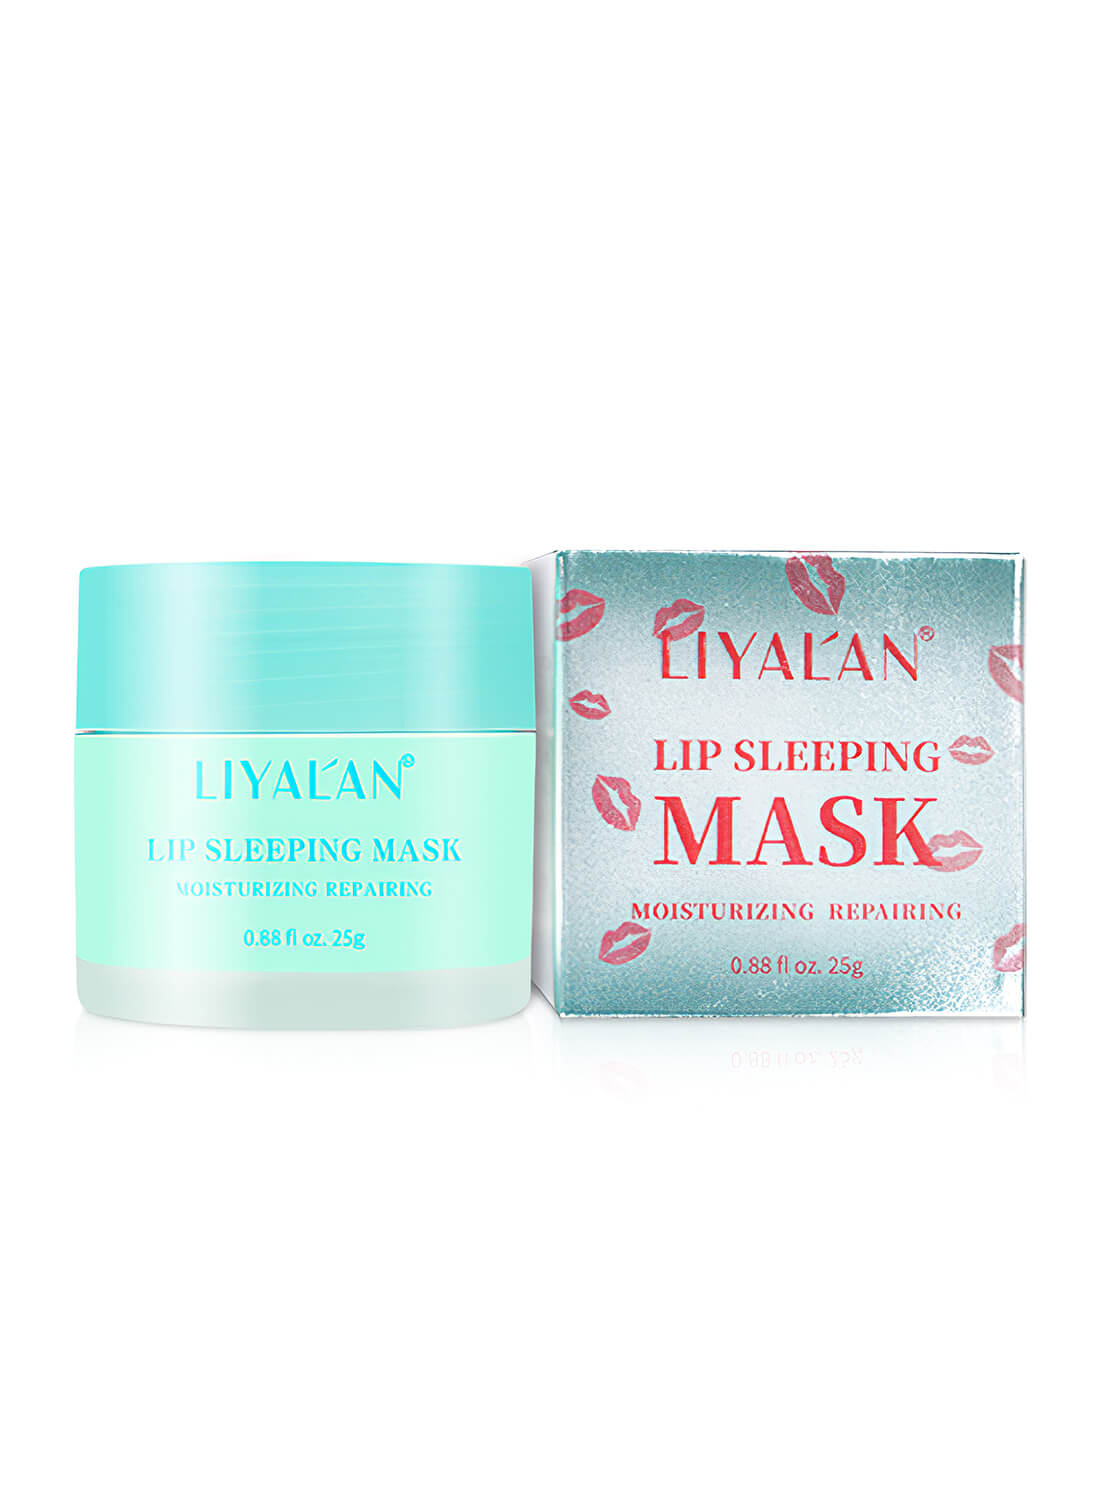 Liyalan Lip Sleeping Mask 25g